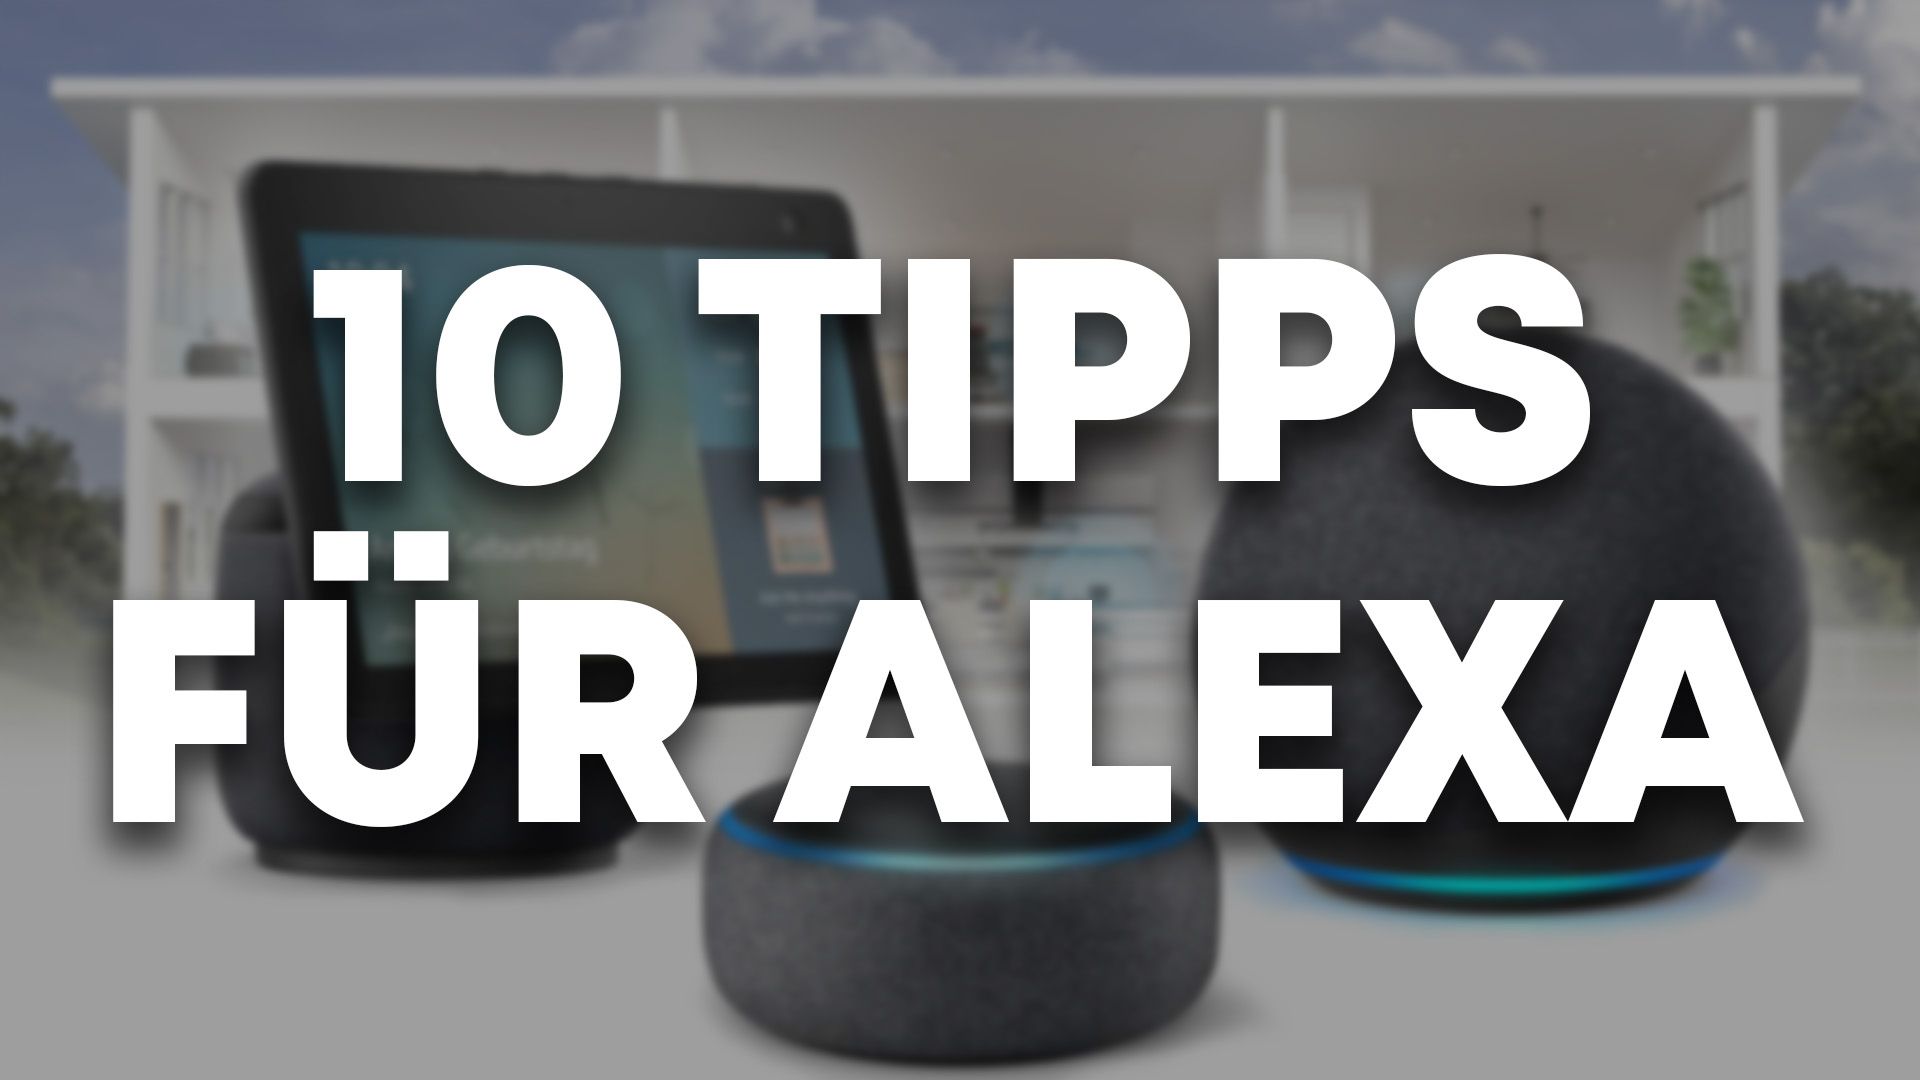 10 Tipps für den Einsatz von Alexa in deinem Zuhause